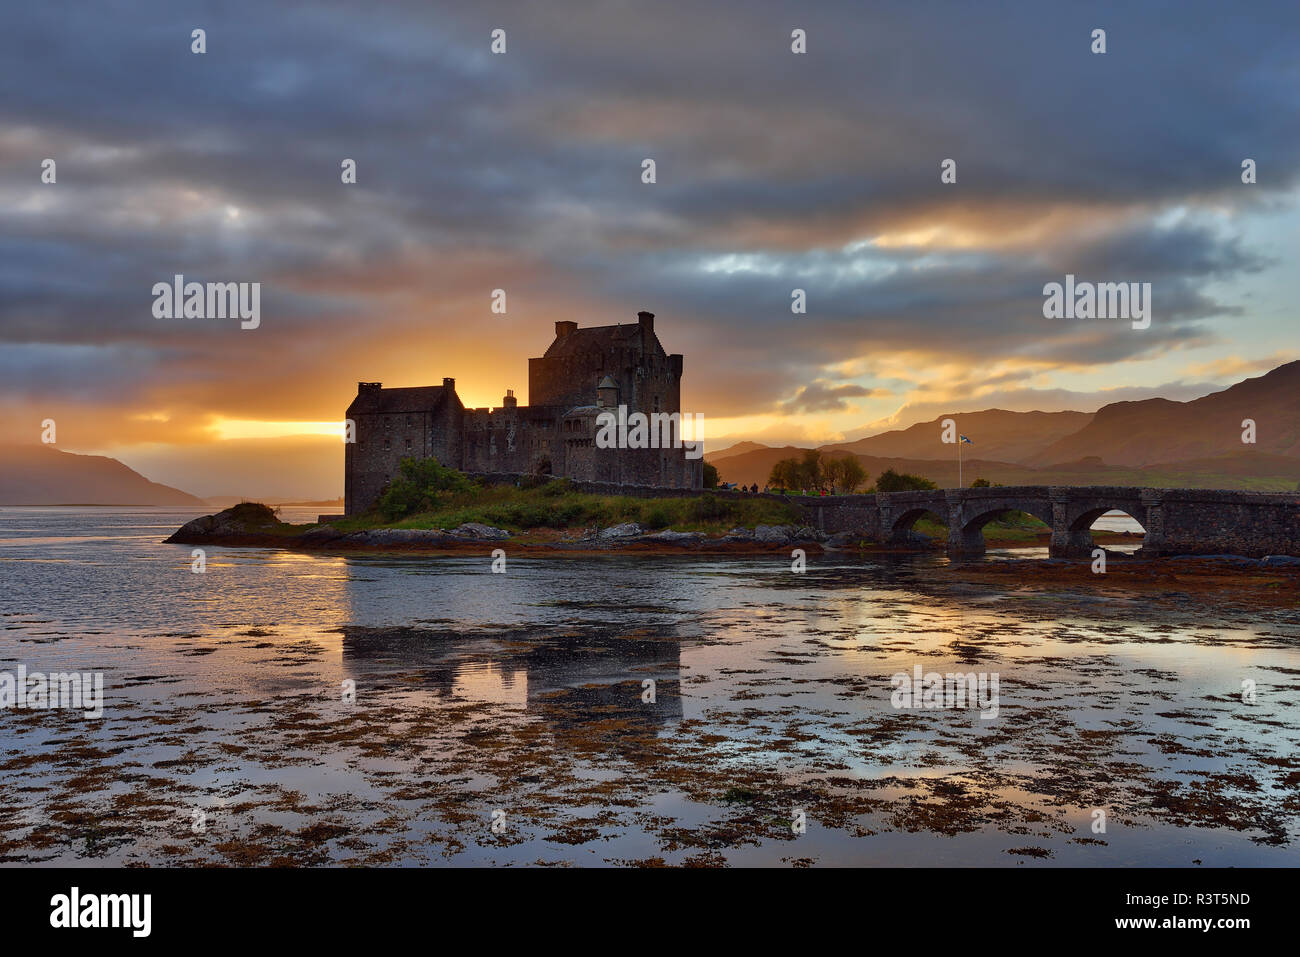 United Kingdom, Scotland, Loch Duich and Loch Alsh, Kyle of Lochalsh, Eilean Donan Castle in the evening Stock Photo